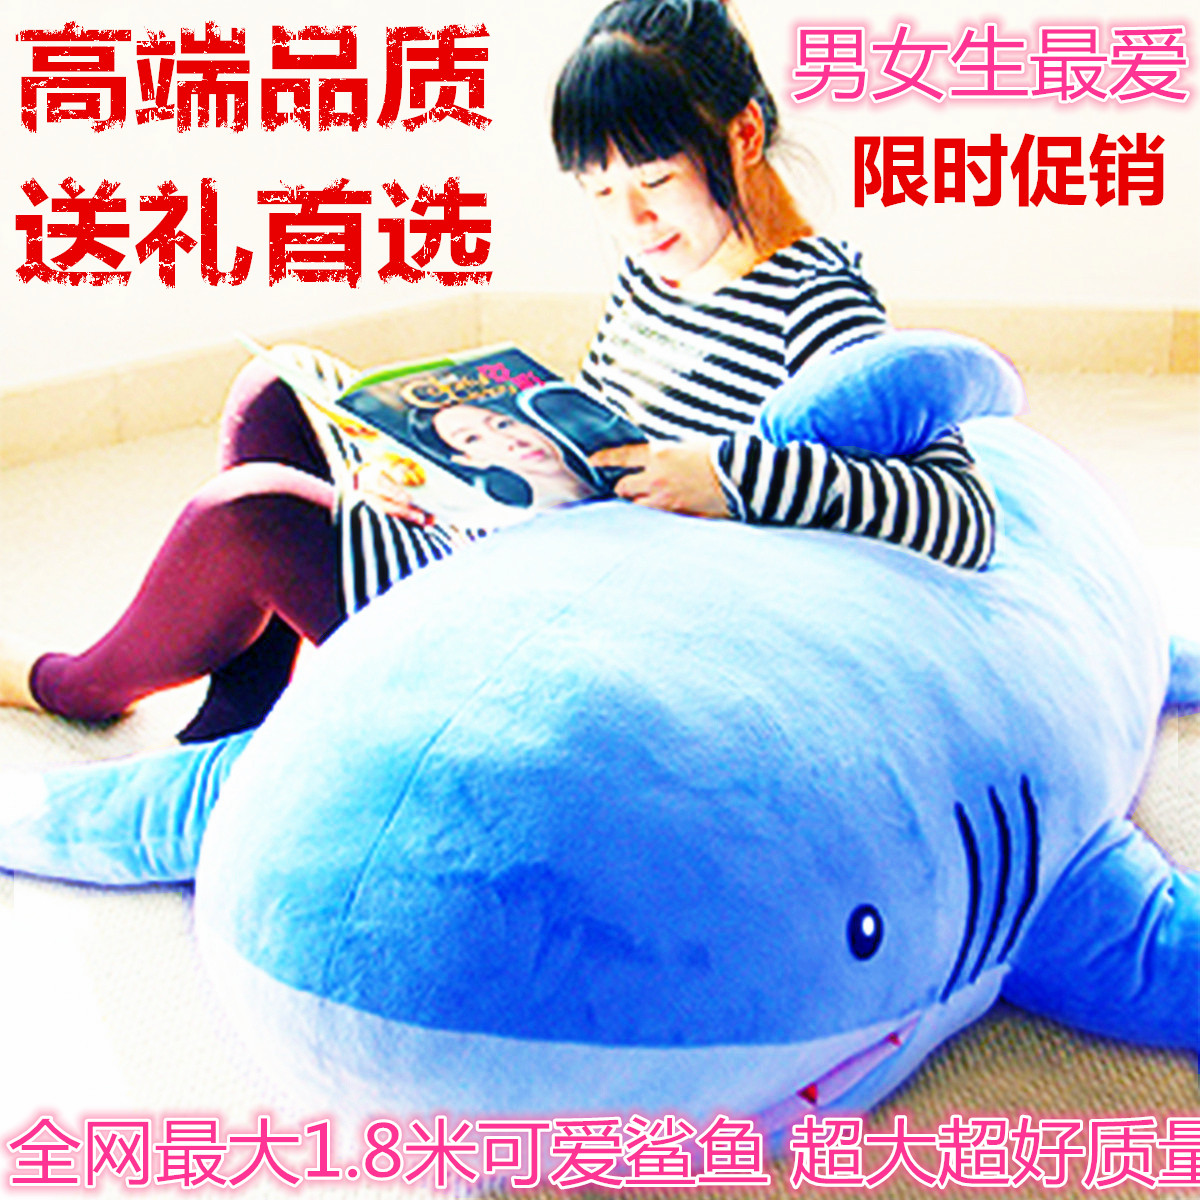 正版1.8米鲨鱼抱枕公仔超大号毛绒玩具睡觉靠枕生日礼物女生批发